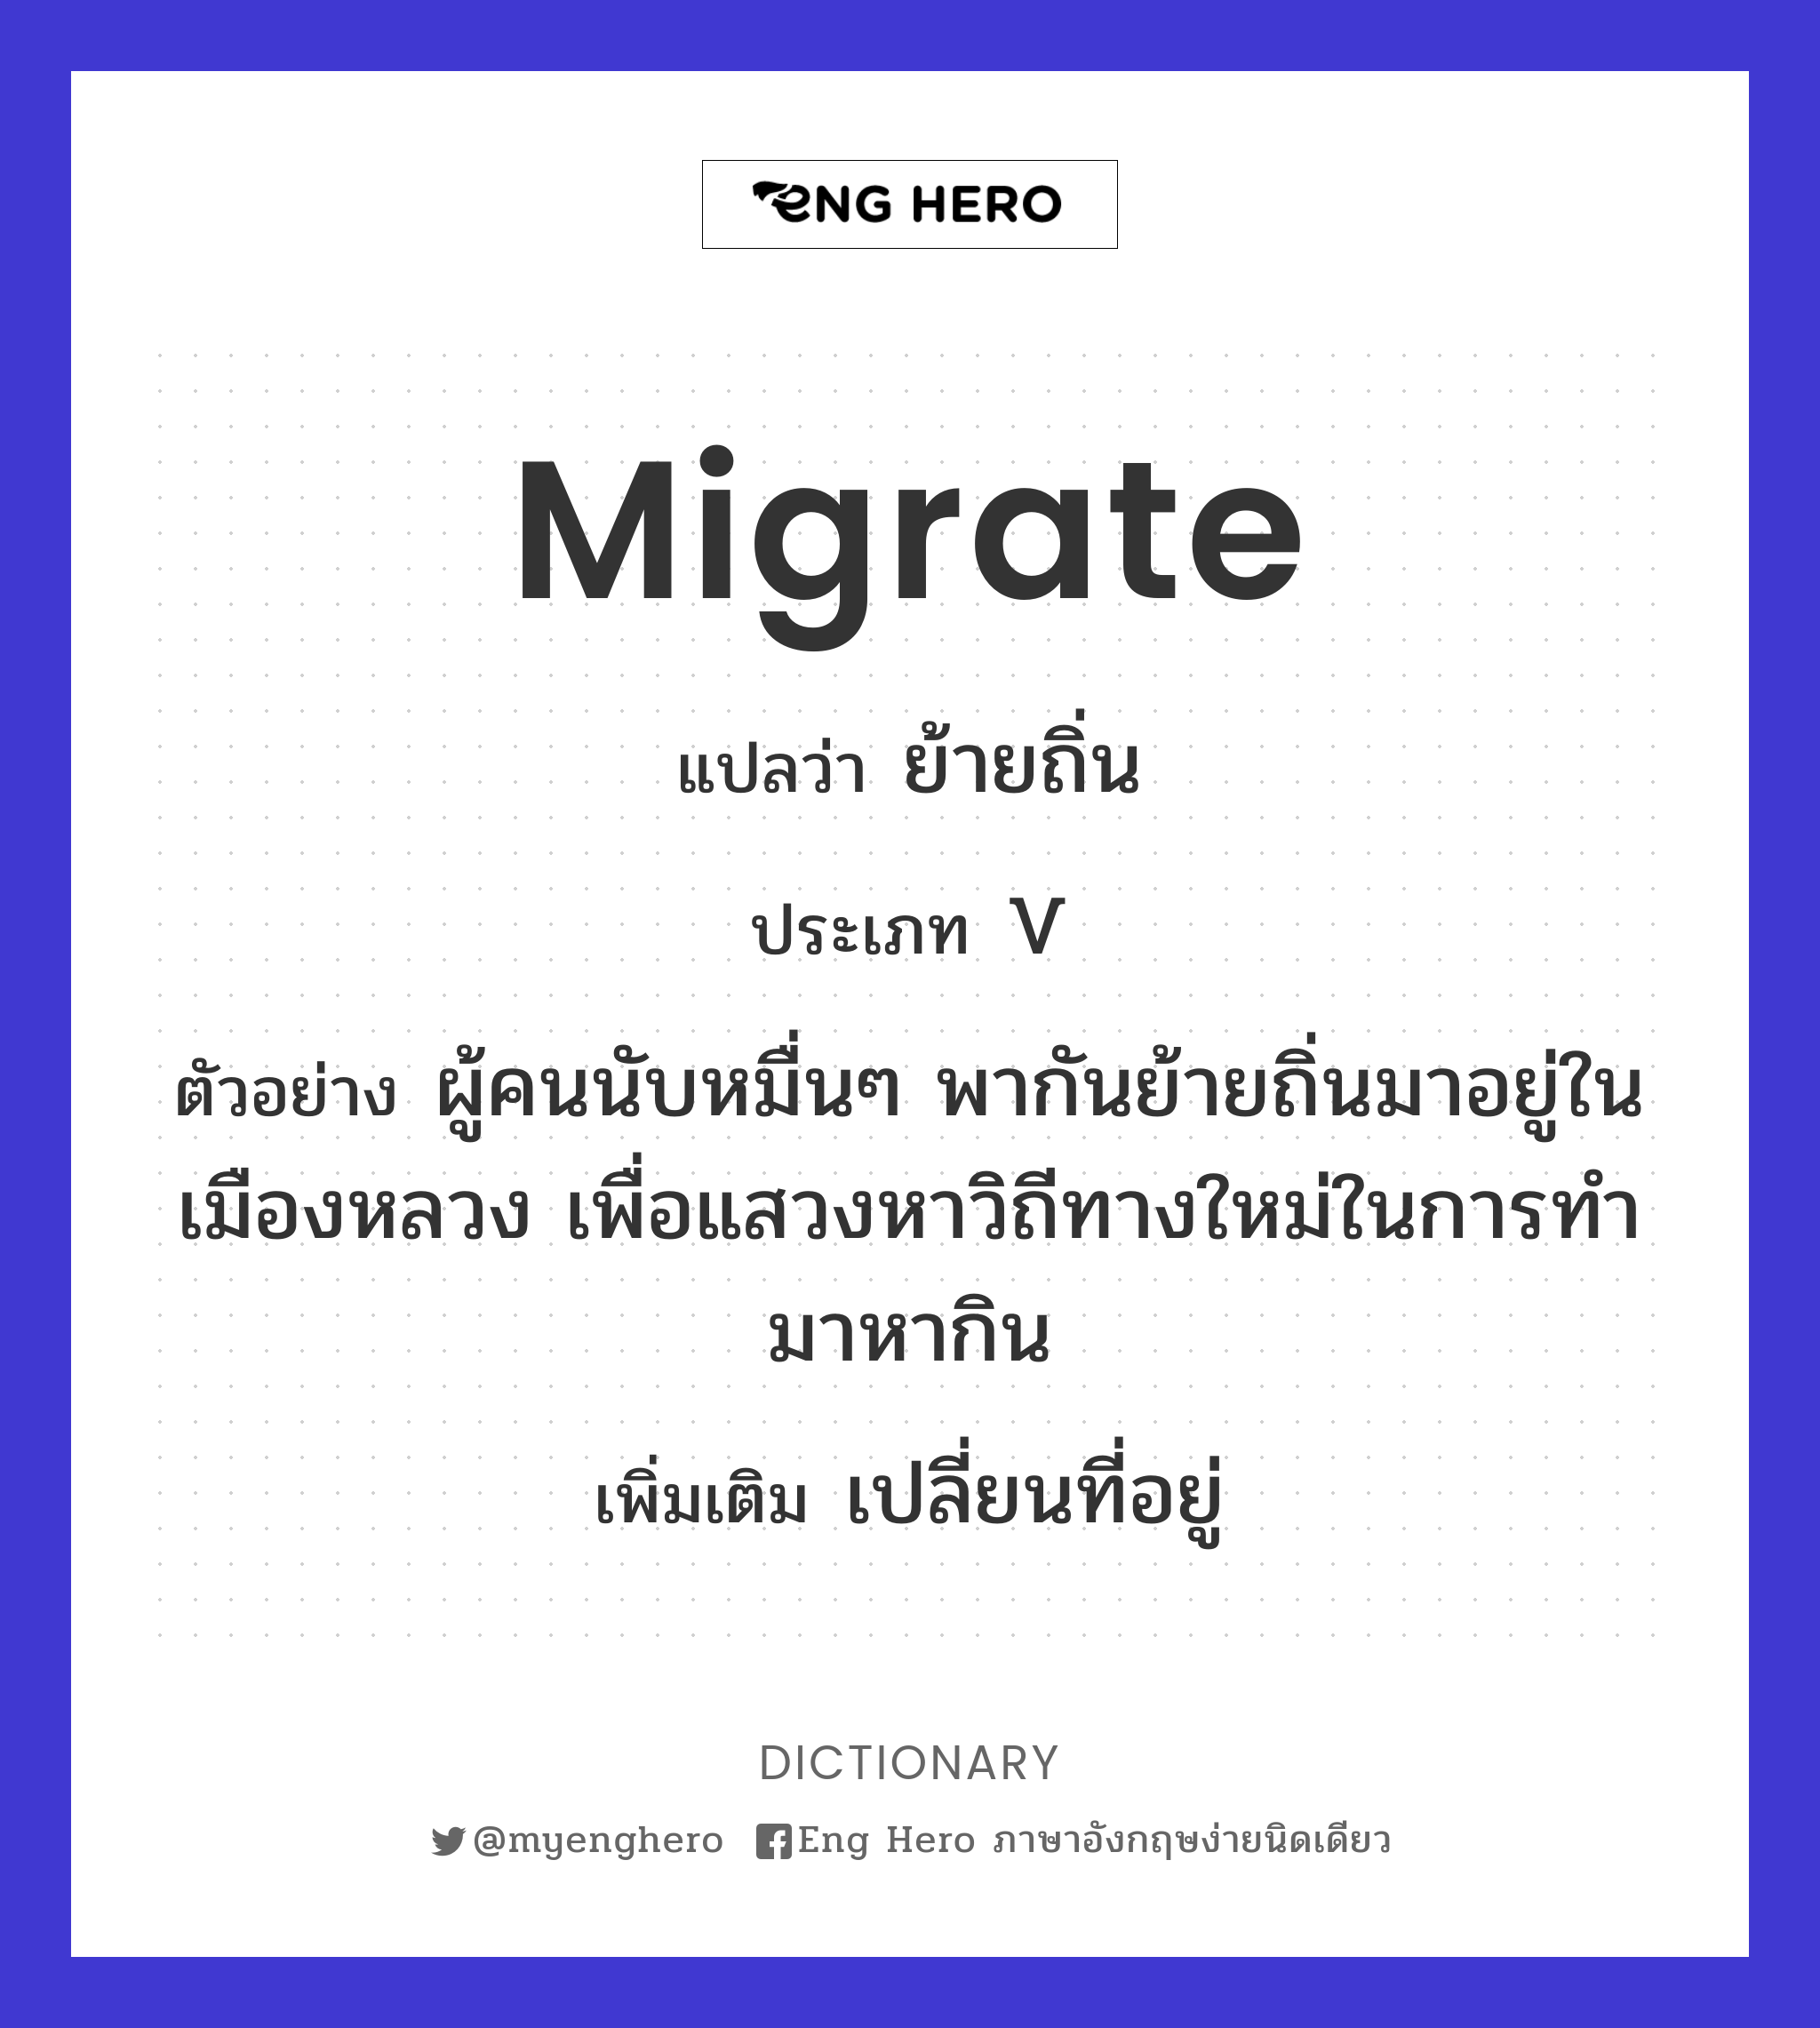 migrate